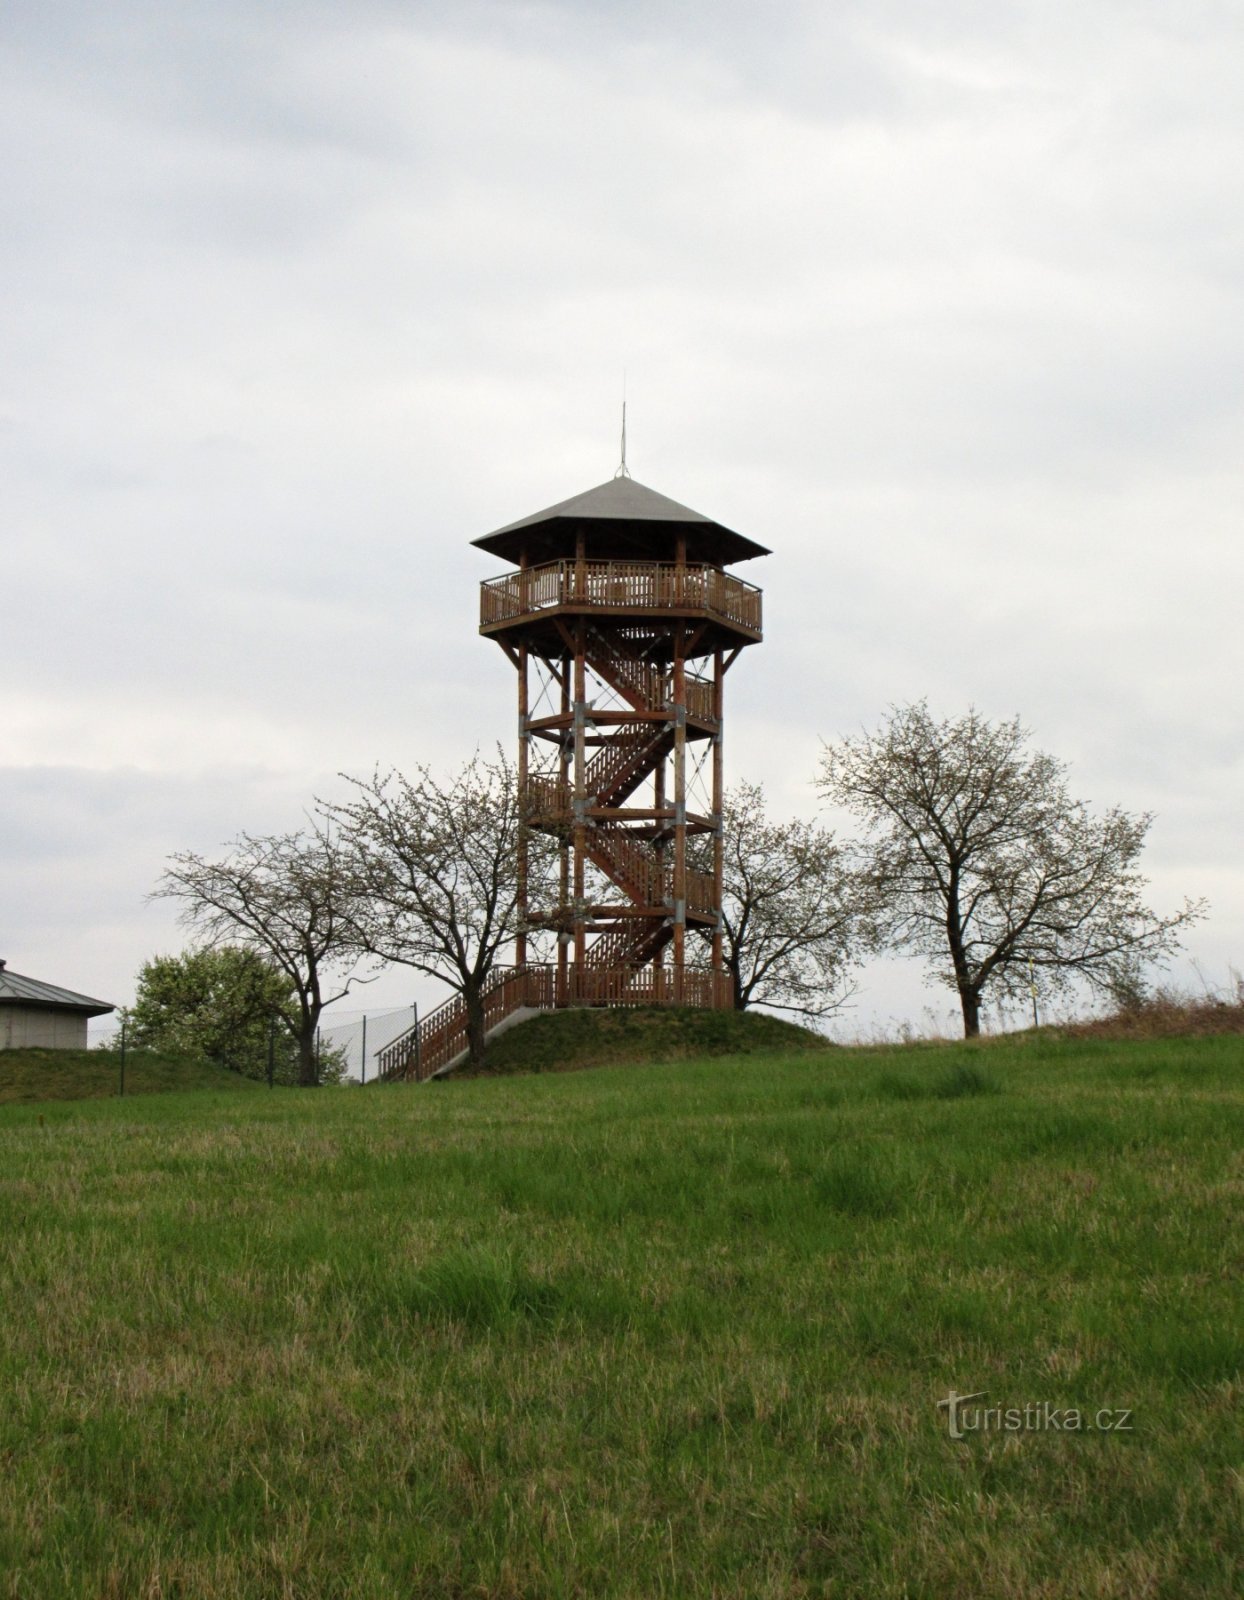 Žernovník - village and lookout tower